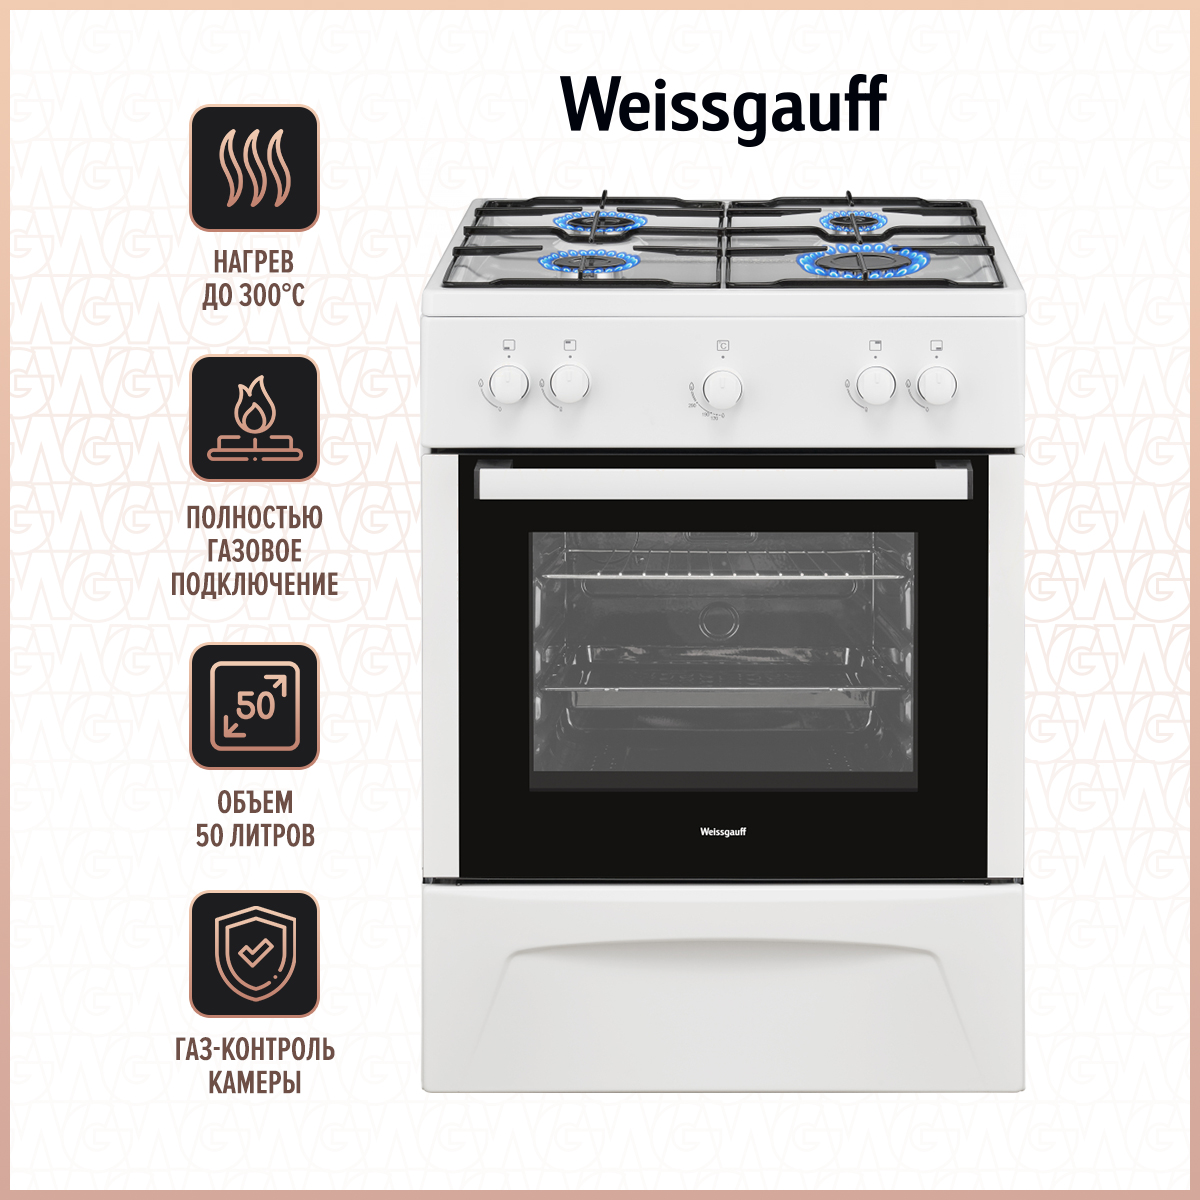 Газовая плита Weissgauff WGS G1G02 W White, купить в Москве, цены в интернет-магазинах на Мегамаркет